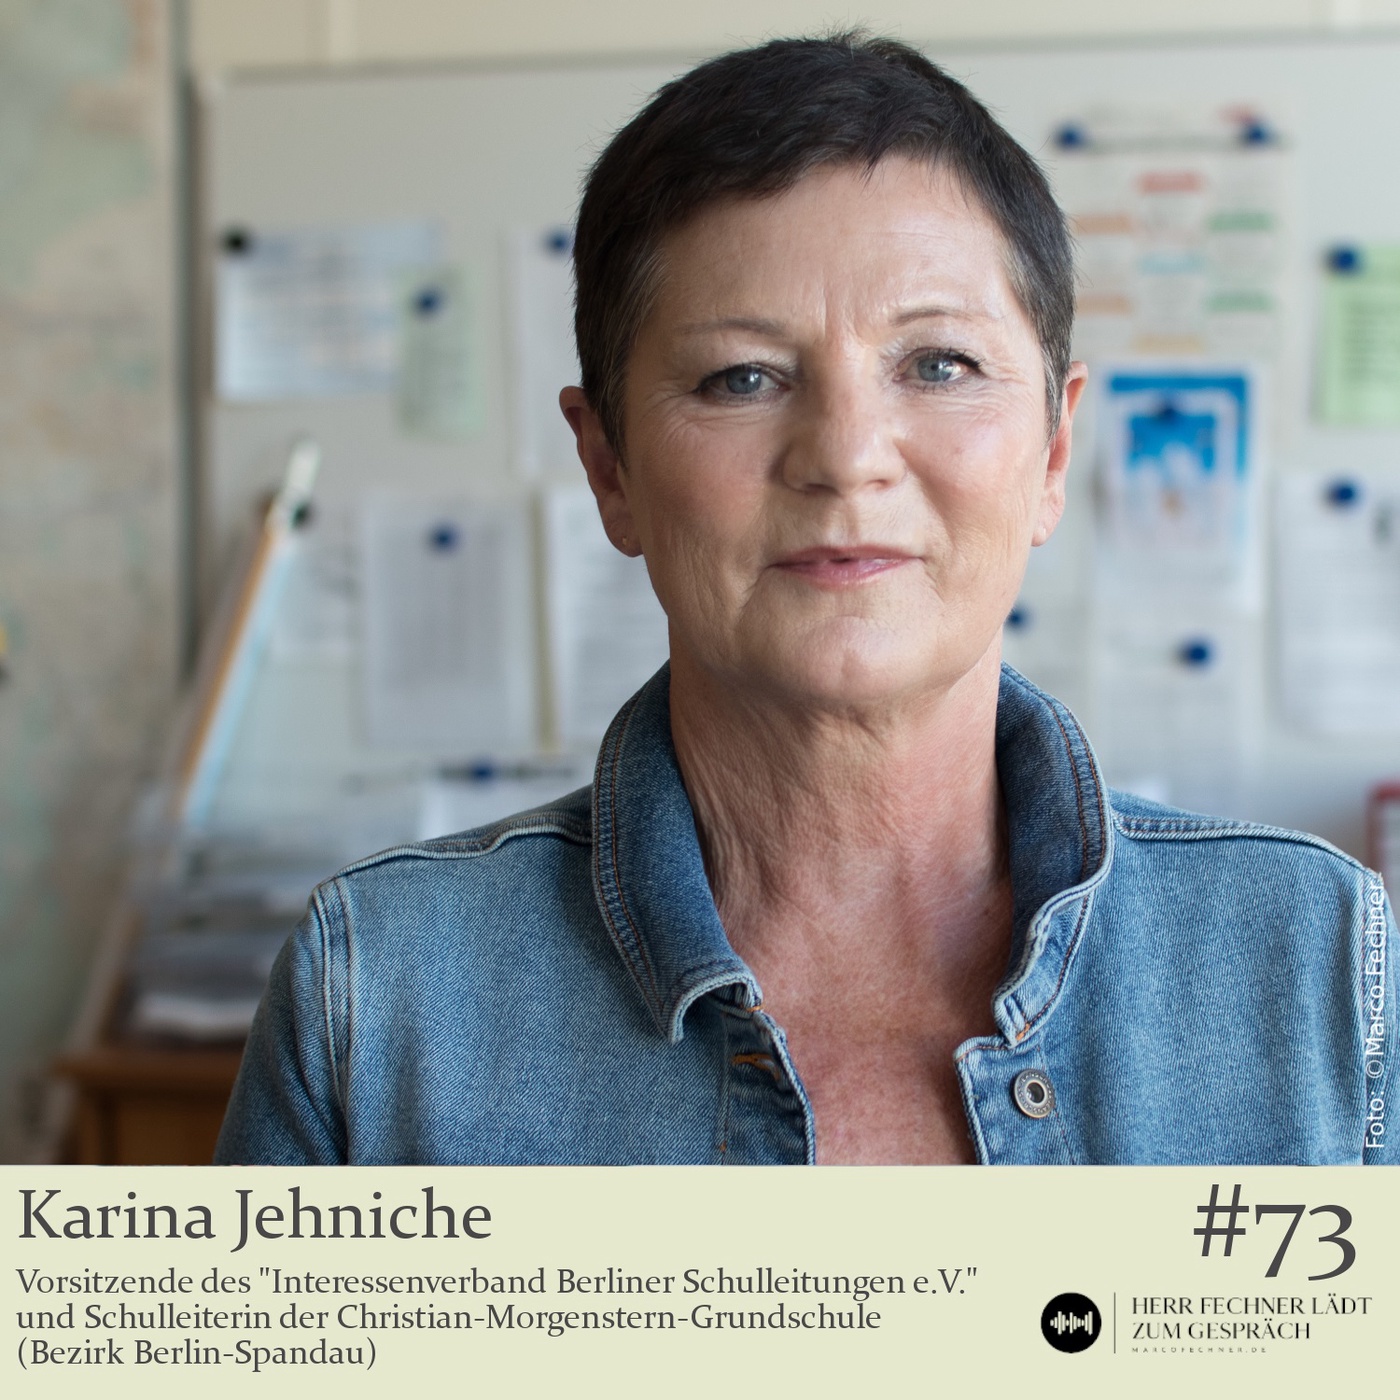 #73 Karina Jehniche, Vorsitzende des IBS e.V. und Schulleiterin